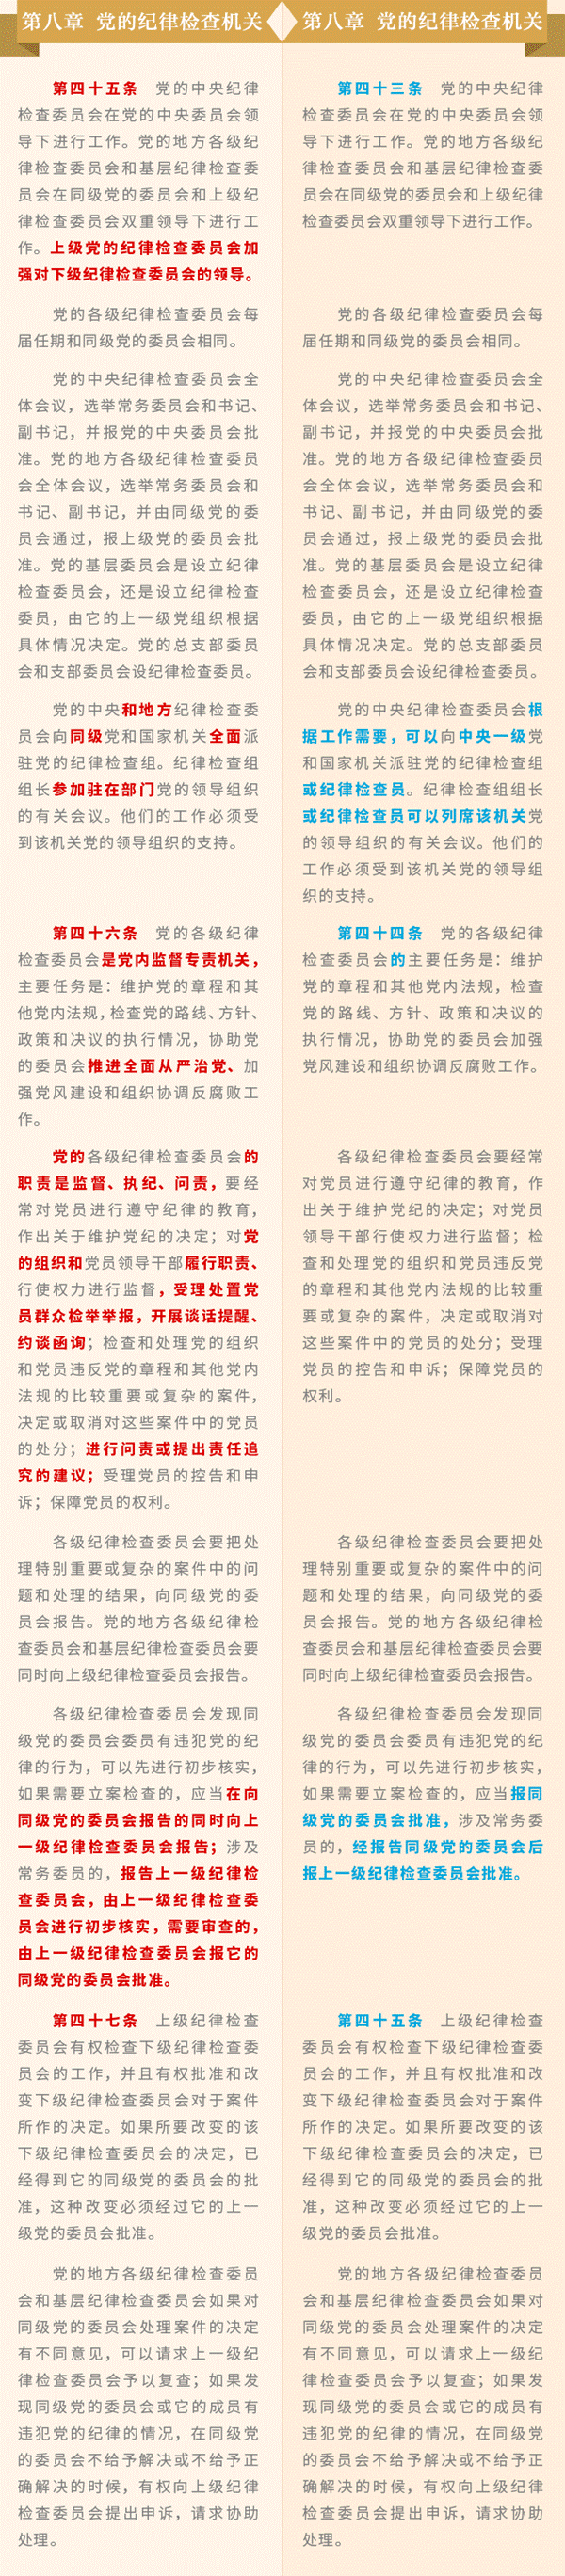 http://www.qinfeng.gov.cn/_mediafile/qfw/2017/11/01/2i4jqvbv84.gif